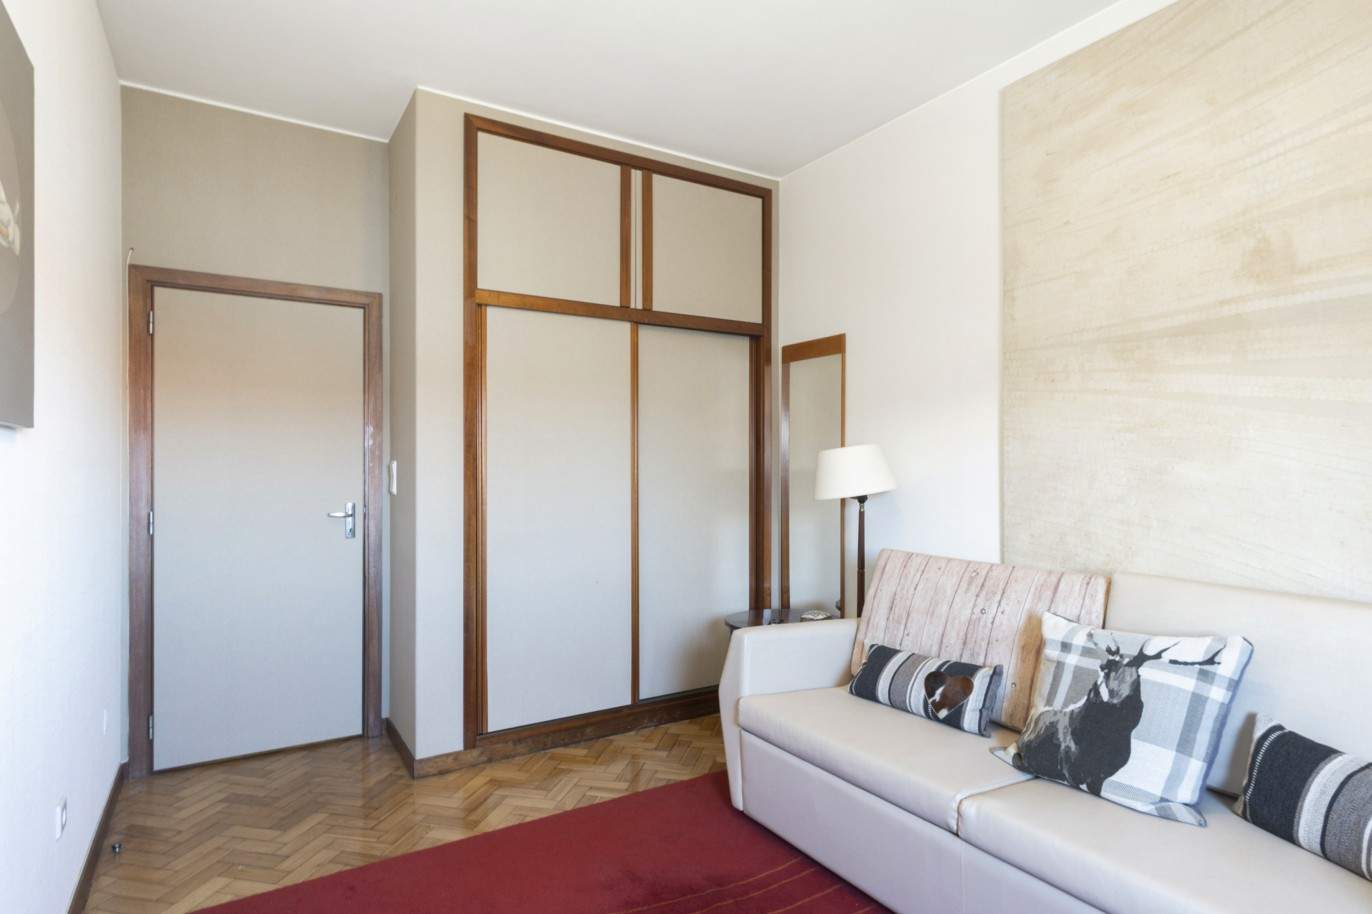 Duplex Wohnung T3+1 mit Balkon, zu verkaufen, in der Nähe der Universität Pole, Porto, Portugal_212478